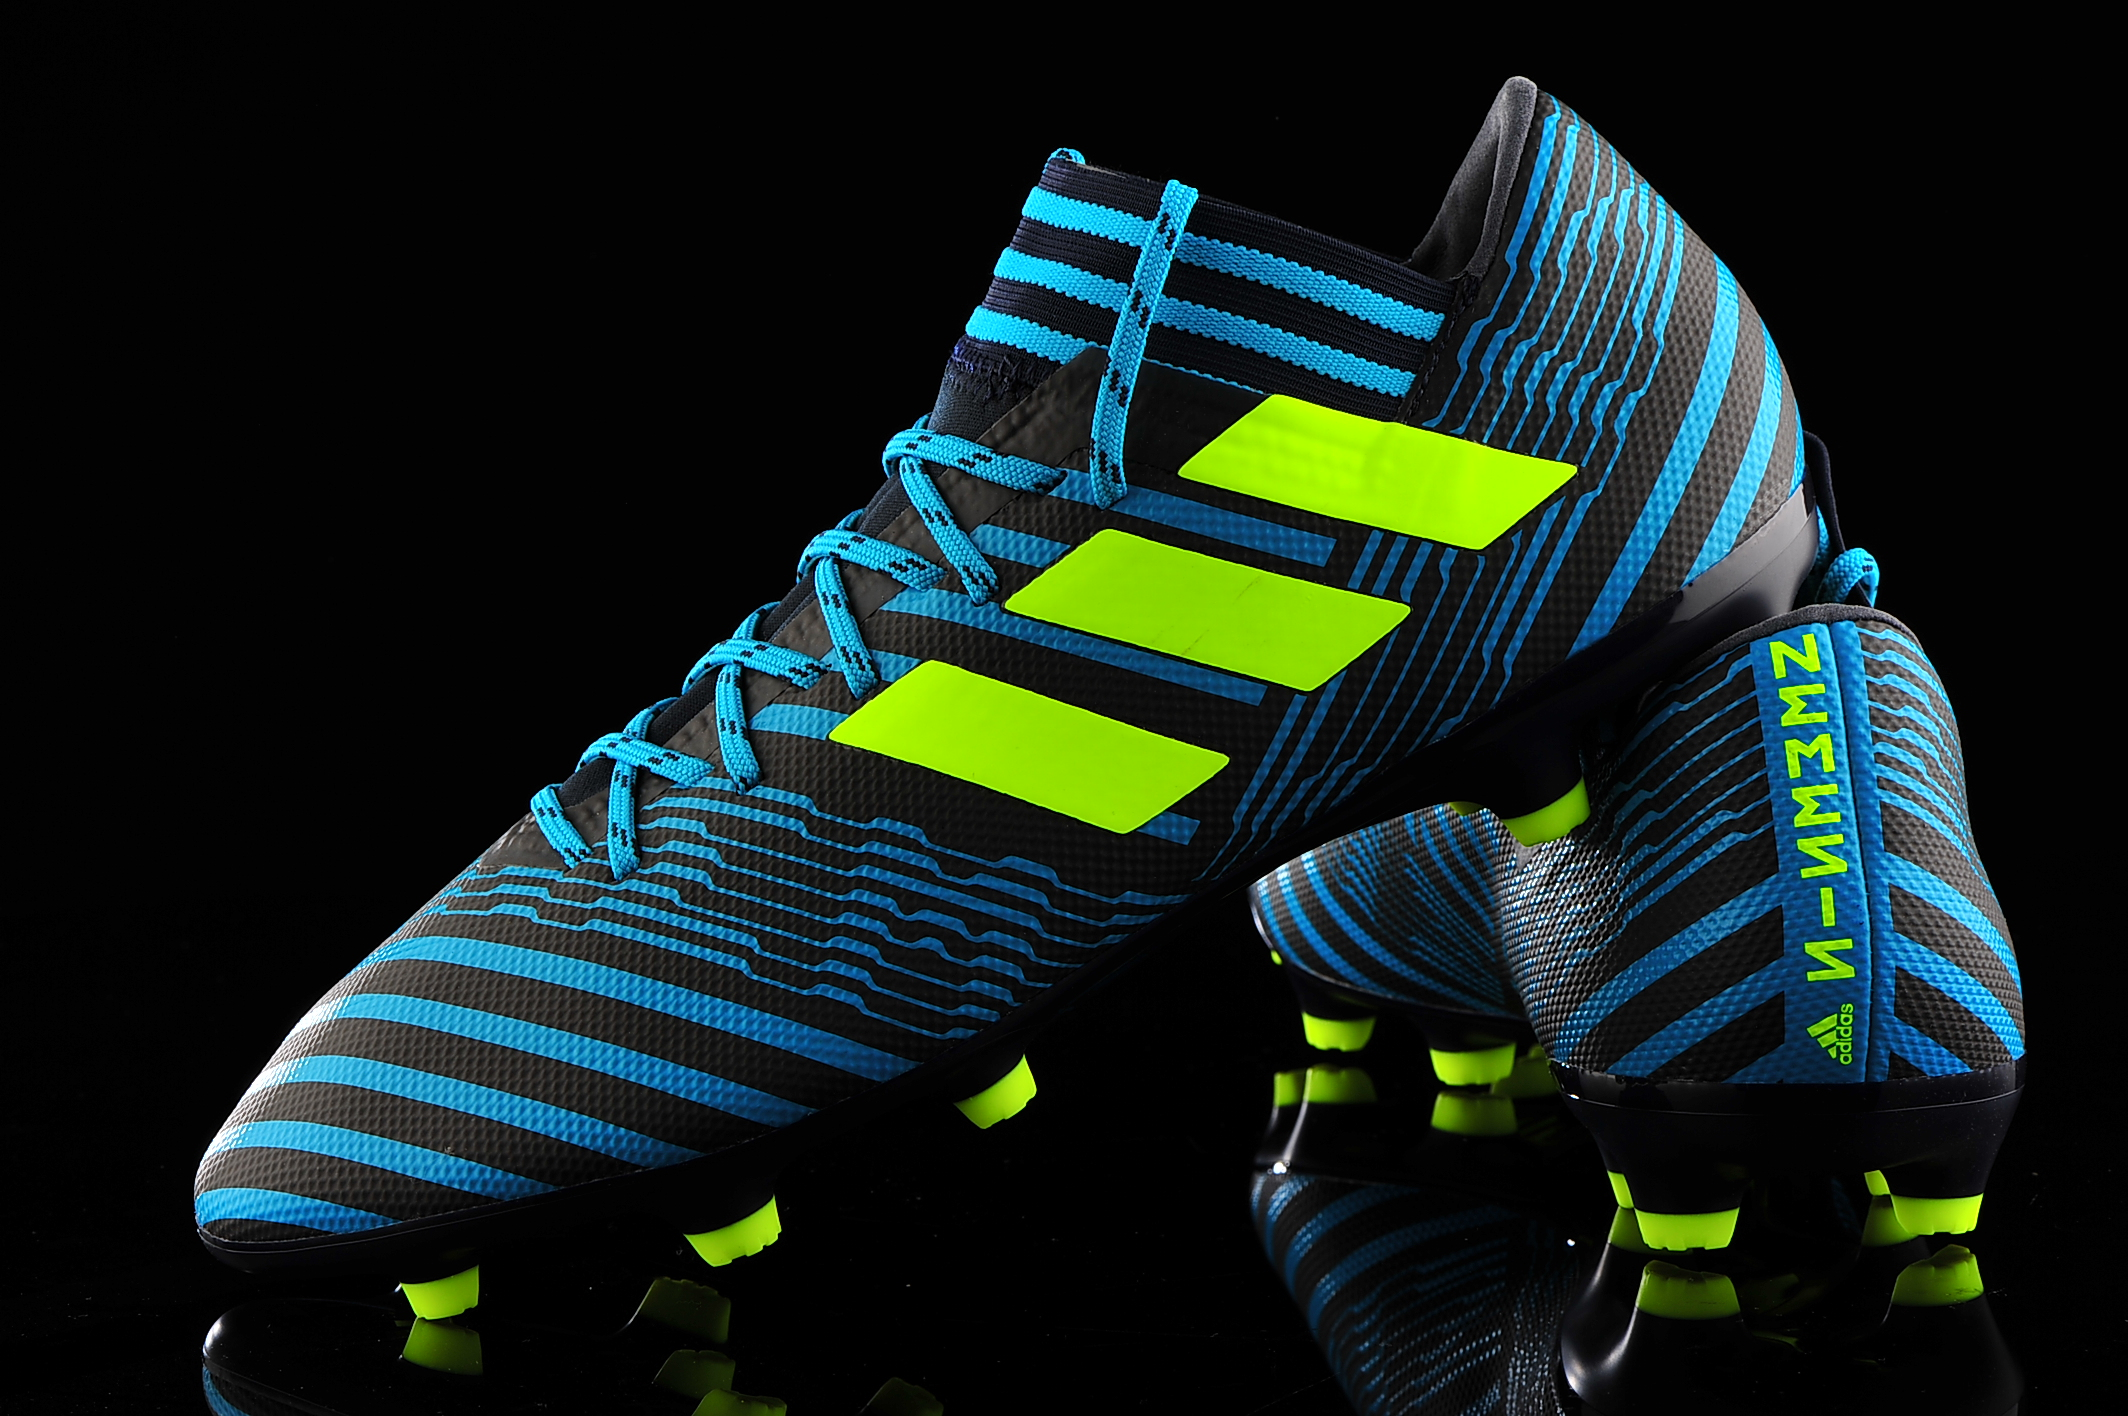 adidas Nemeziz 17.3 FG S80601 | R-GOL.com - Football boots \u0026 equipment